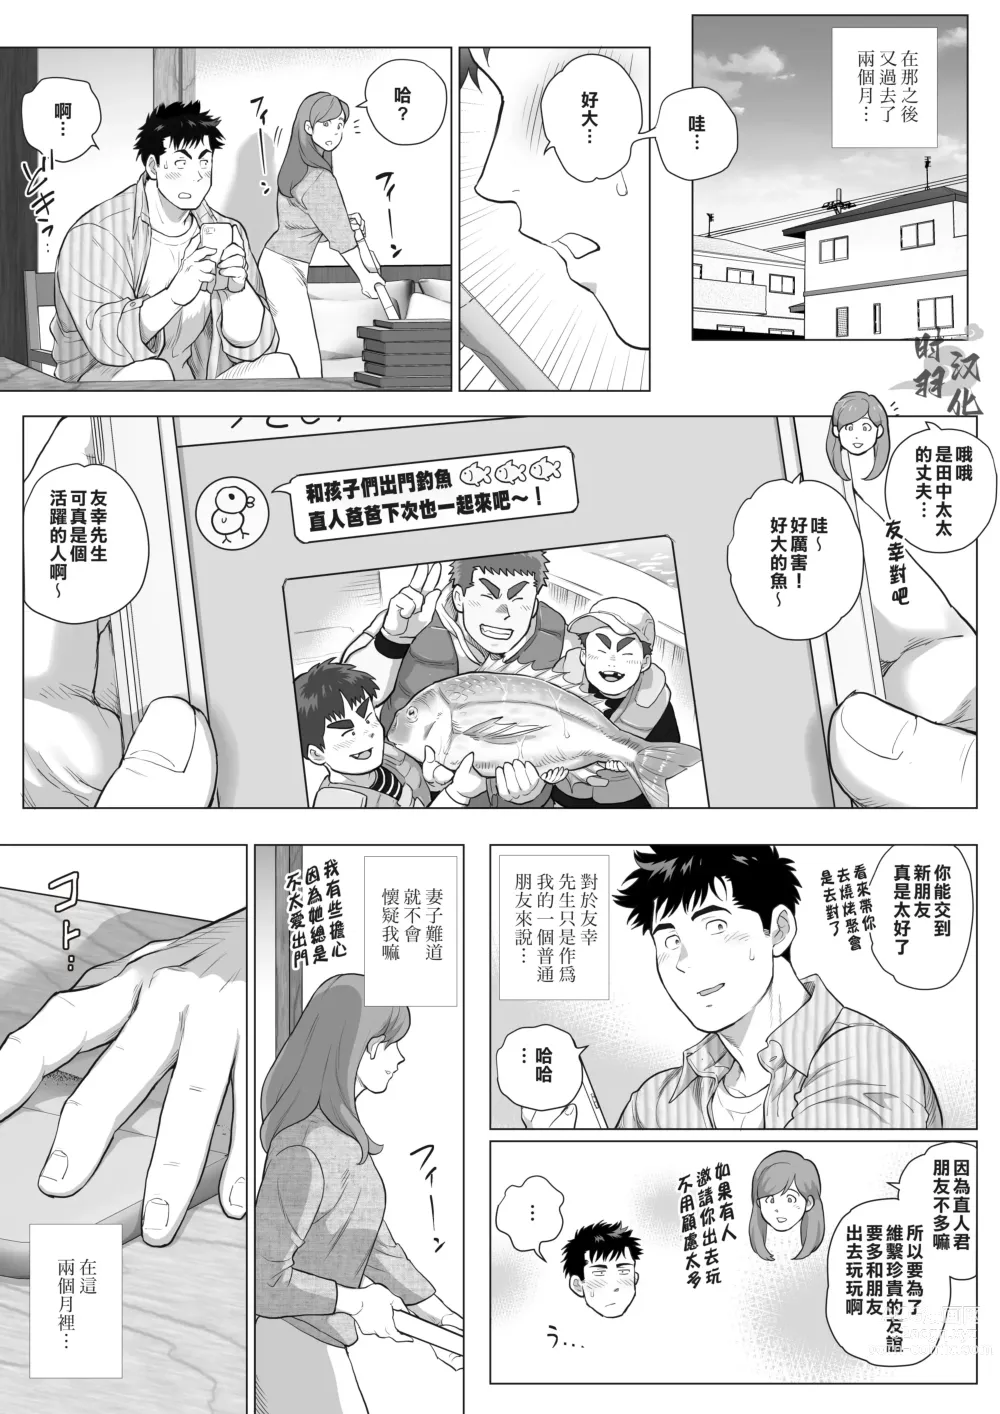 Page 4 of manga 直人爸爸与友幸爸爸 第三话